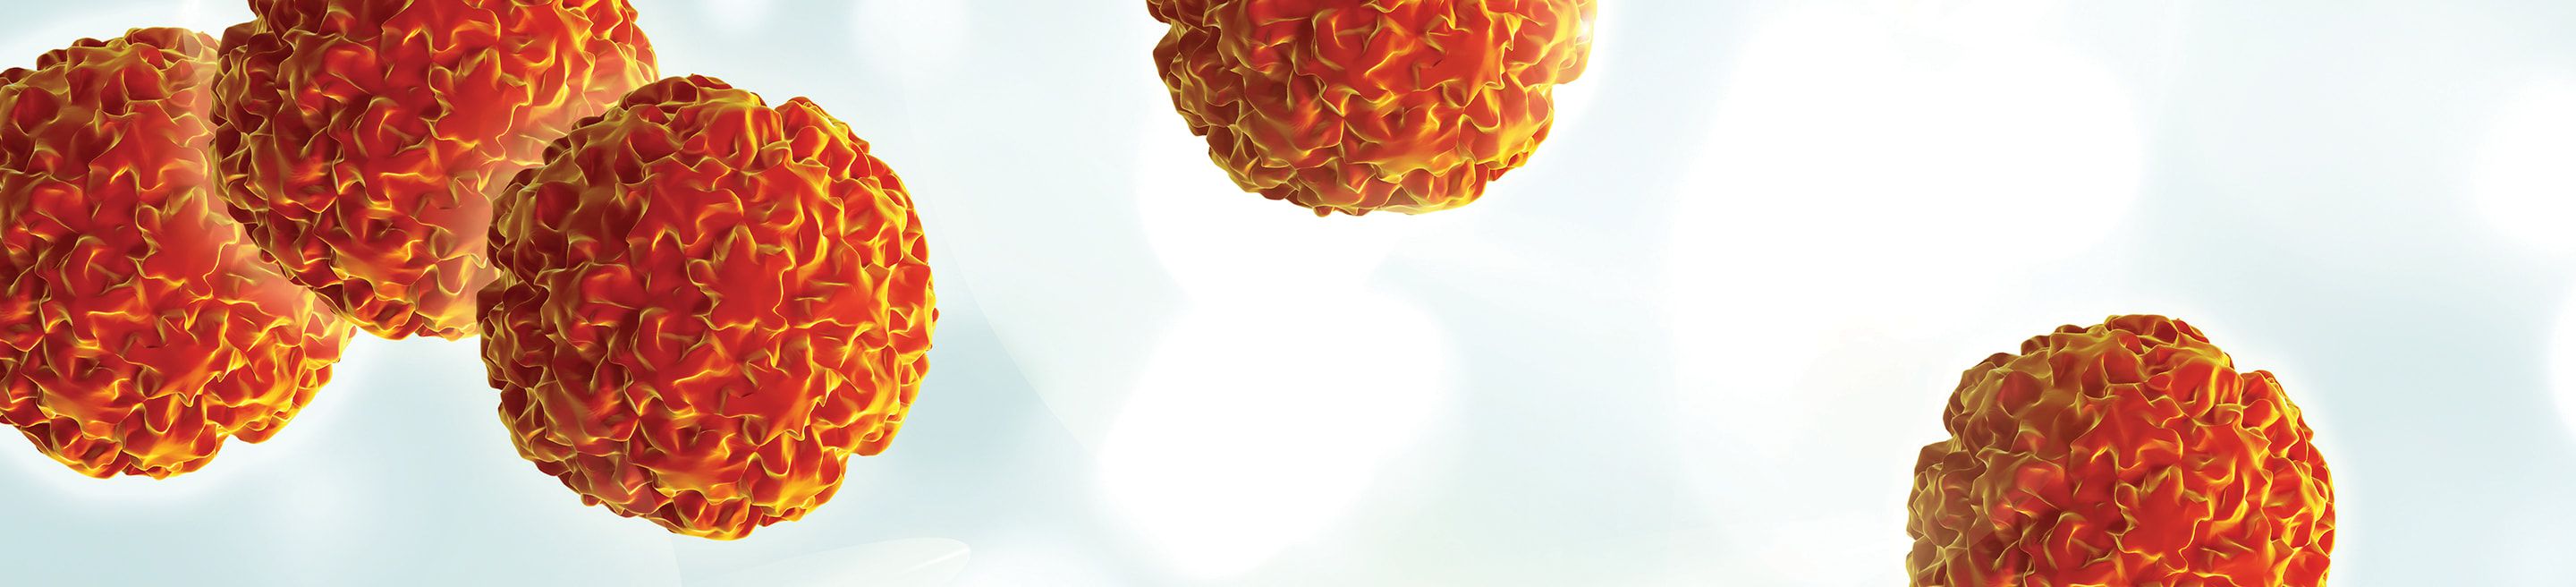 HPV virus cells